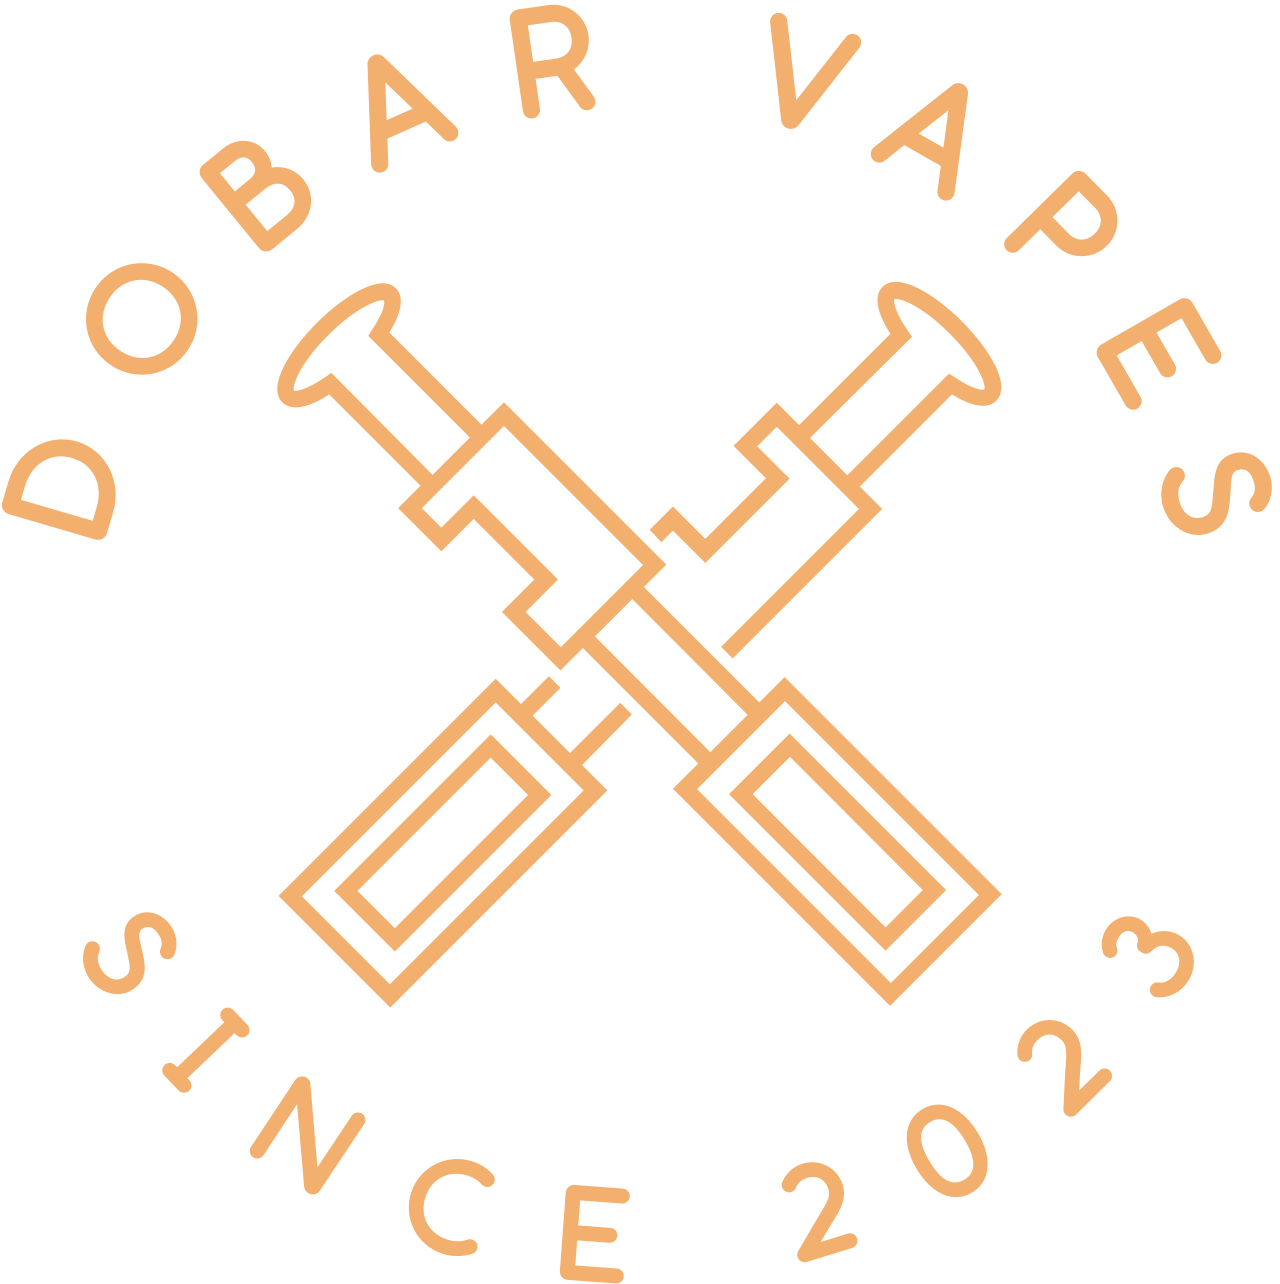 DOBAR VAPES's logo